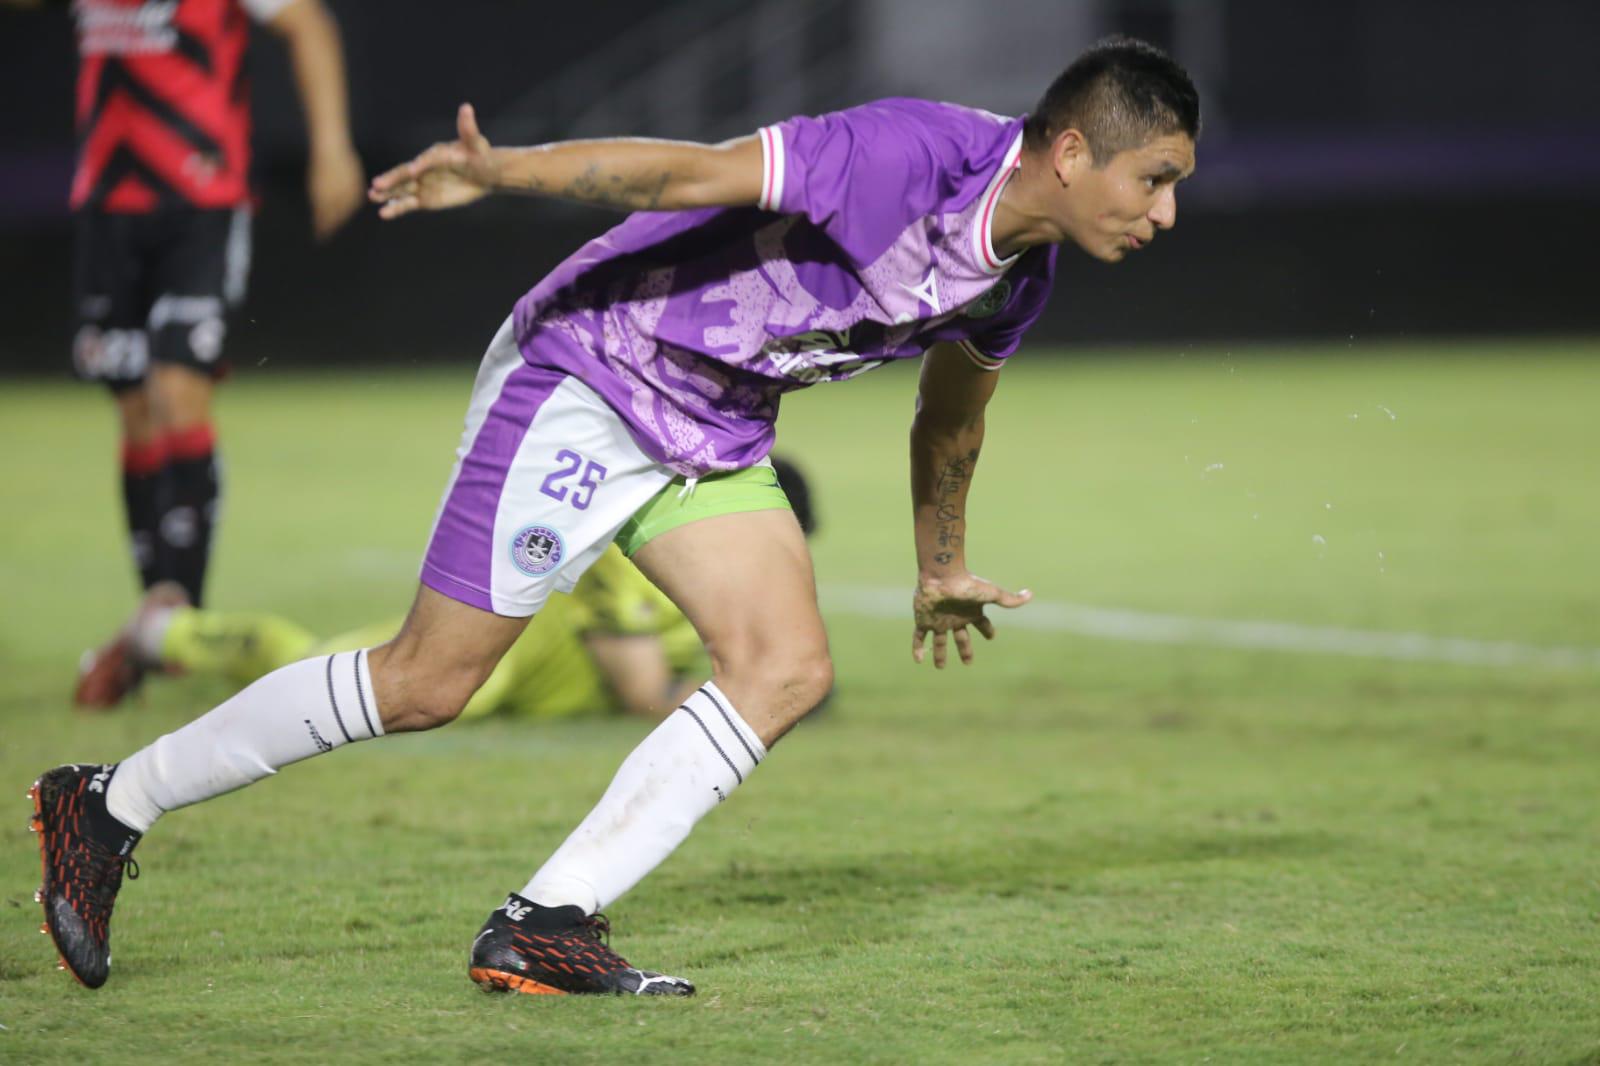 $!Mazatlán FC y Xolos salen parejos 2-2 en duelo de preparación en el Kraken